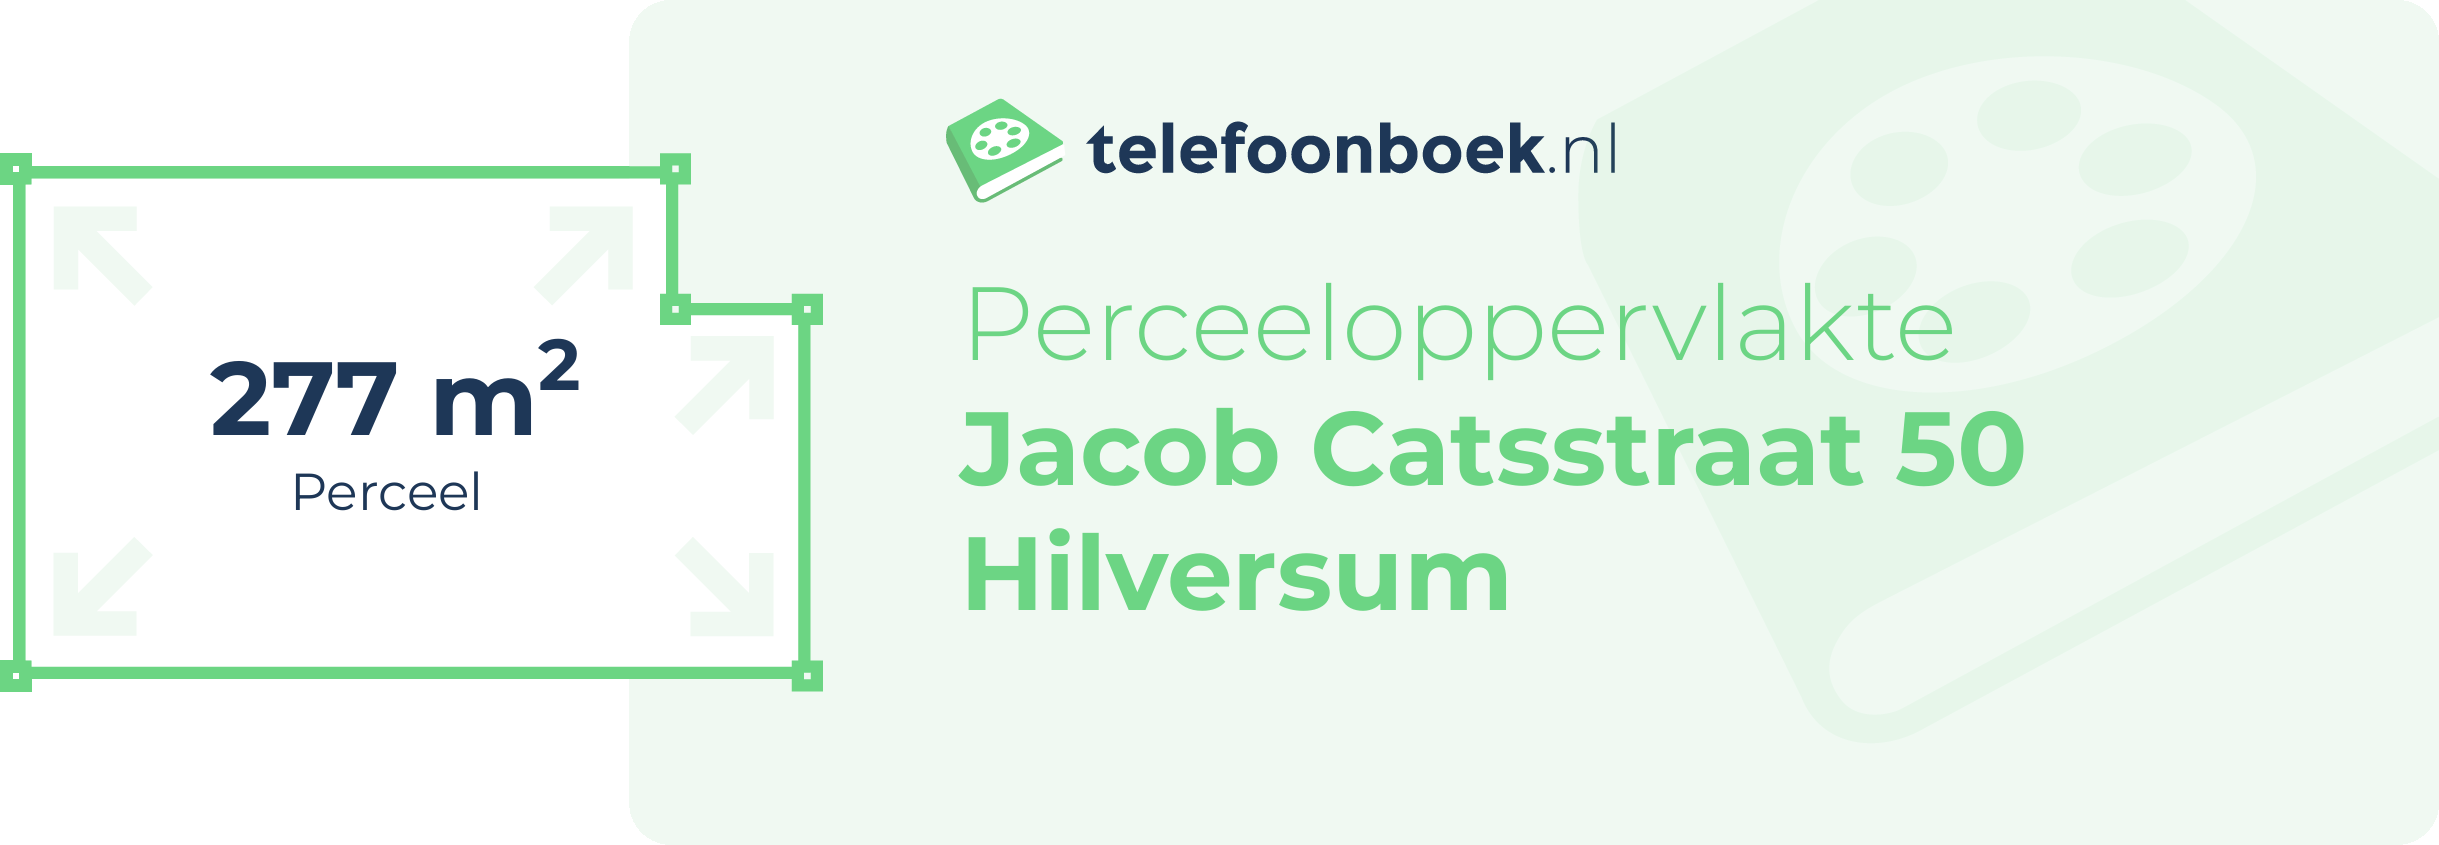 Perceeloppervlakte Jacob Catsstraat 50 Hilversum